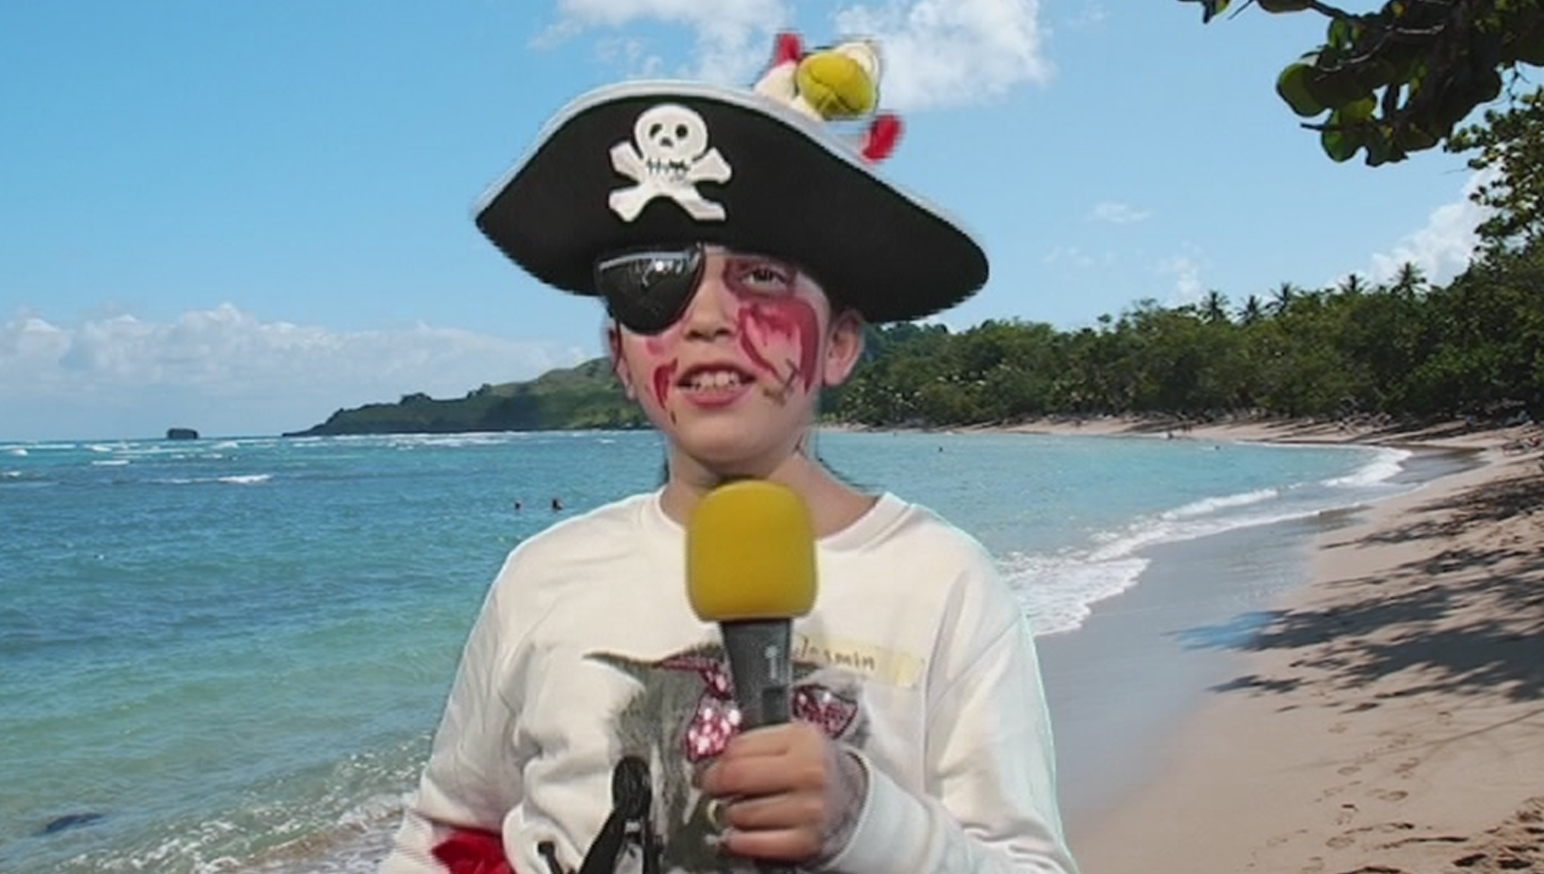 Ein Junge als Pirat verkleidet an einem Strand